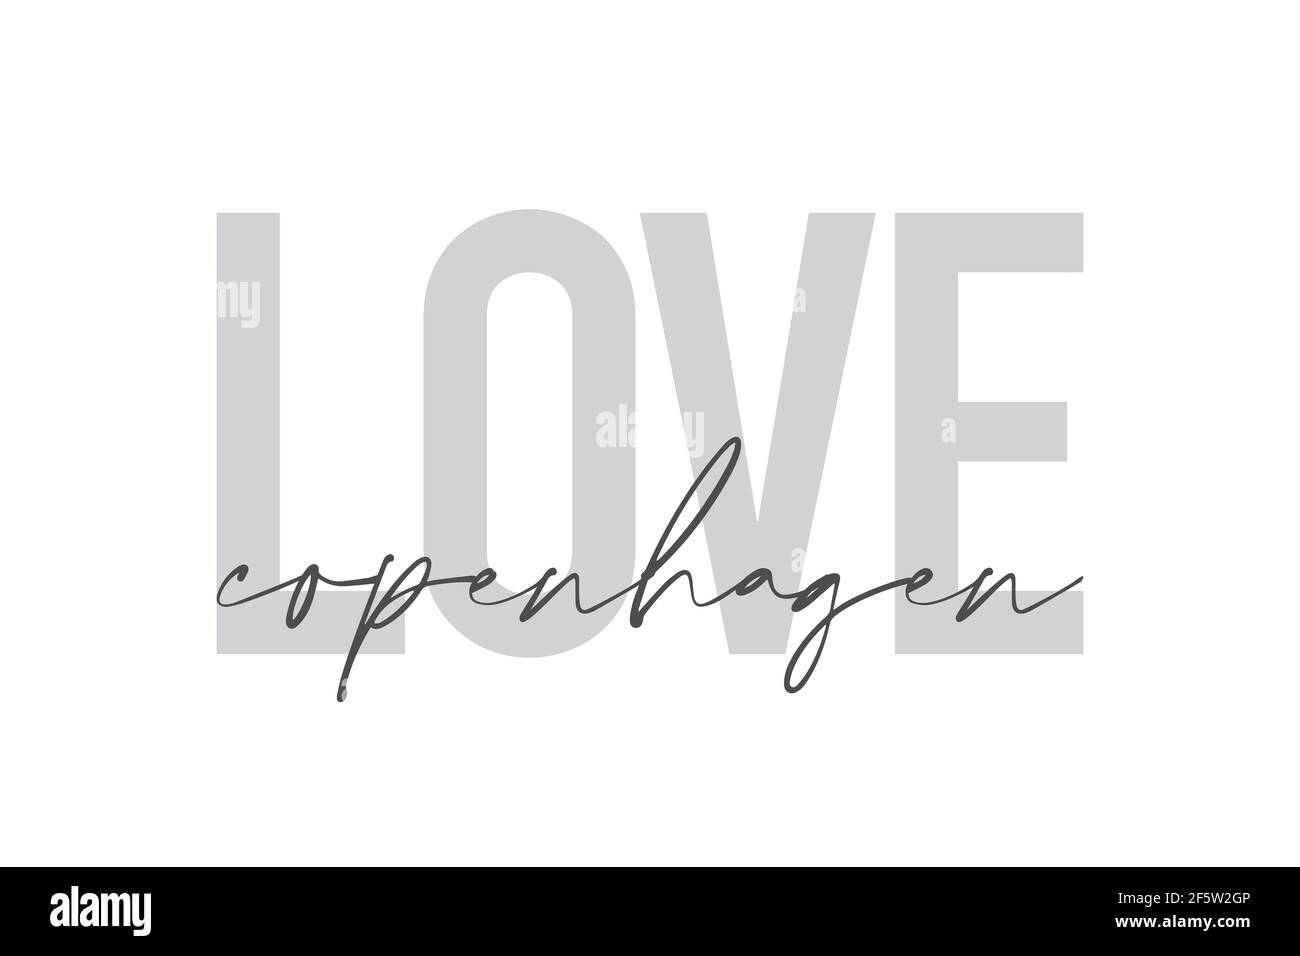 Design grafico moderno, urbano e semplice di un detto 'Love Copenhagen' in colori grigi. Tipografia trendy, fredda, manoscritta Foto Stock